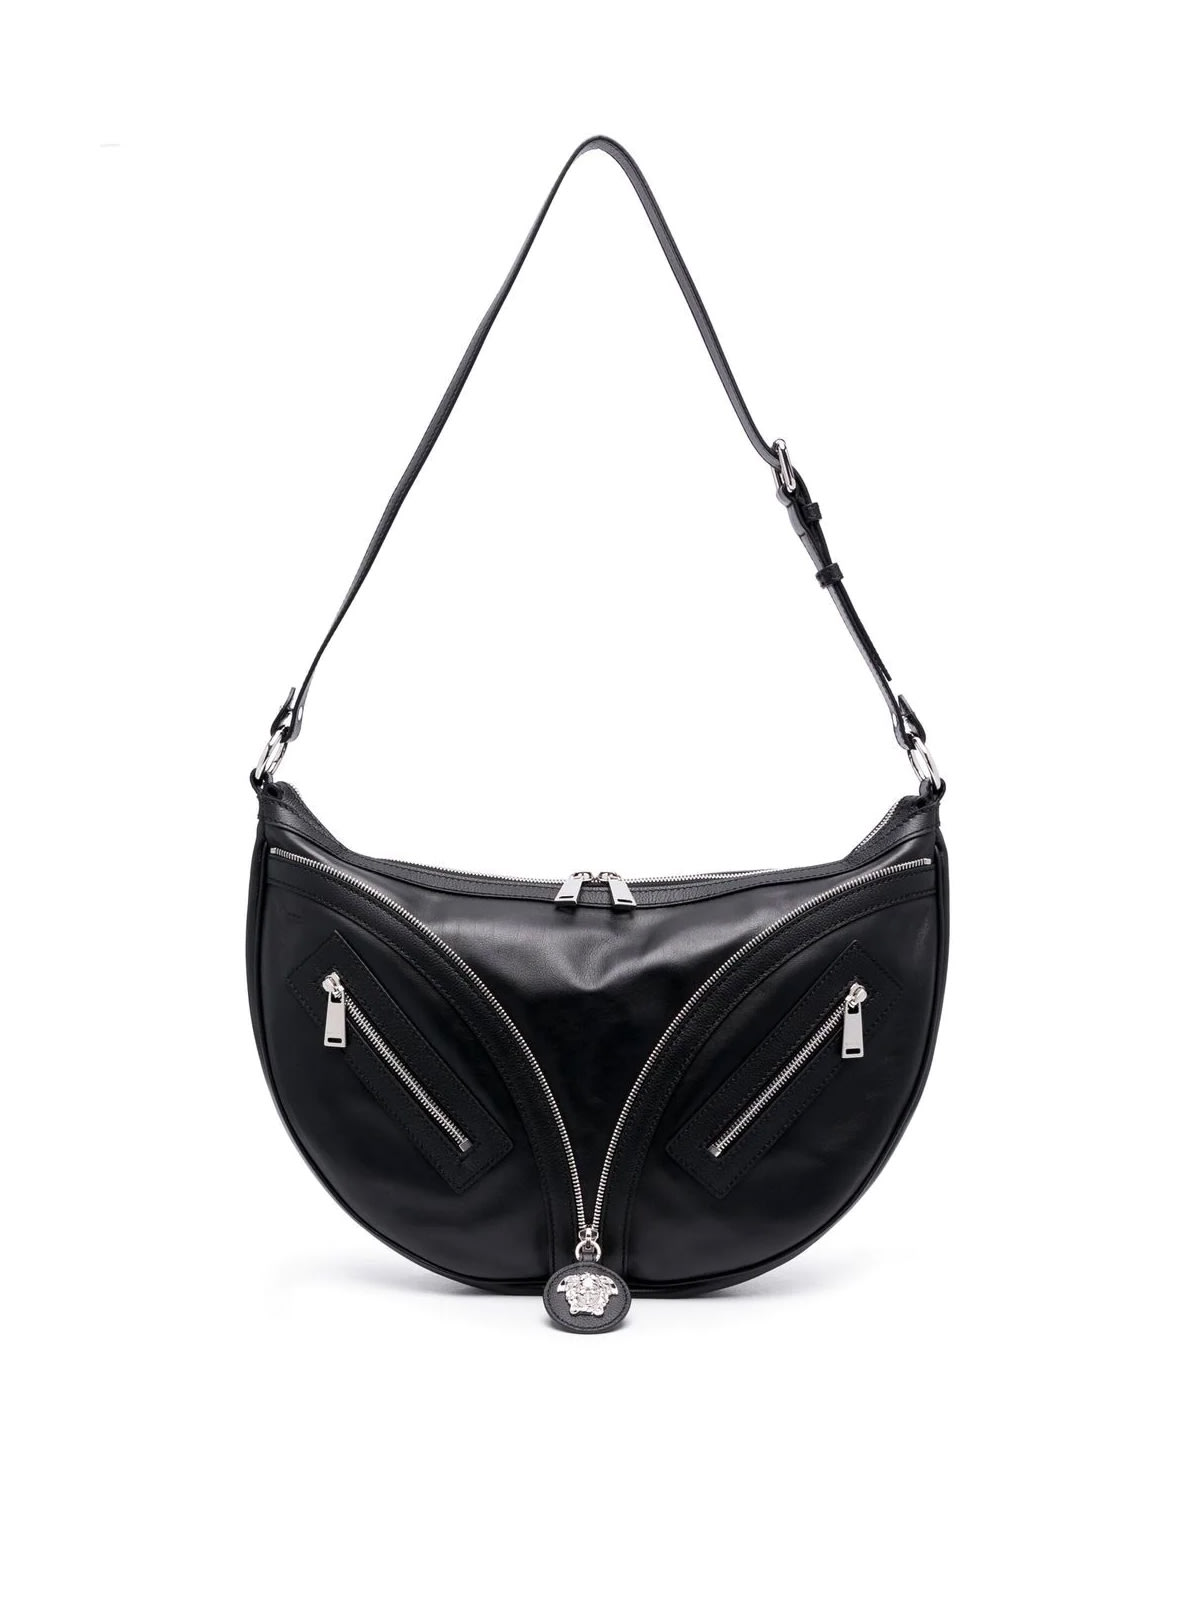 Versace Medium Hobo Calf Leather Bag In P Black Palladium